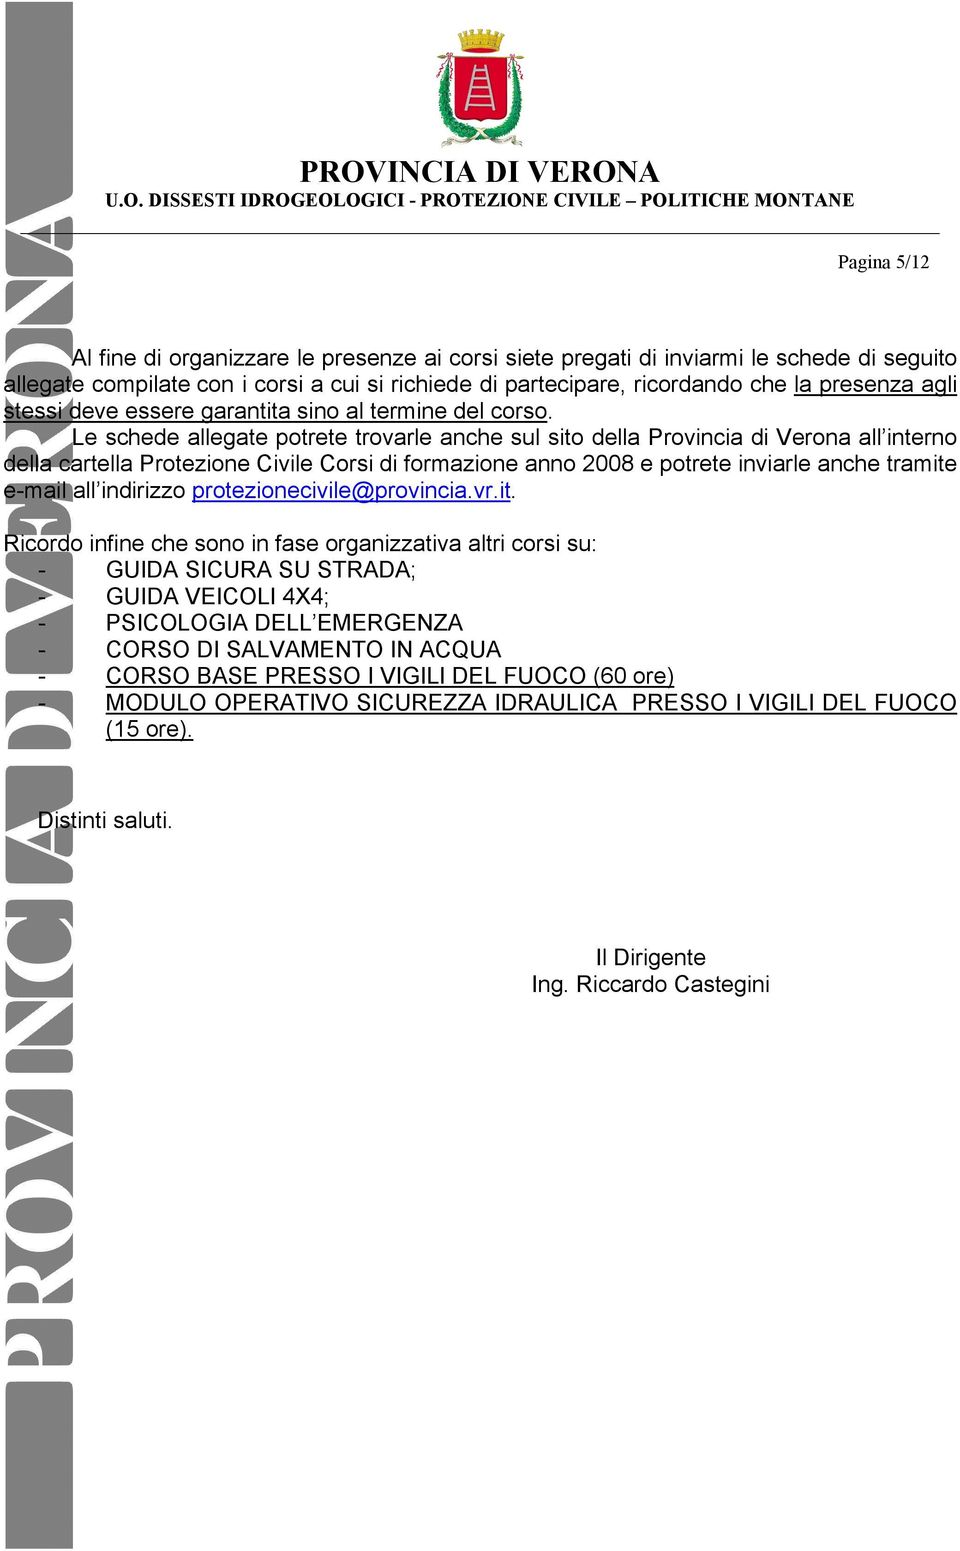 Le schede allegate potrete trovarle anche sul sito della Provincia di Verona all interno della cartella Protezione Civile Corsi di formazione anno 2008 e potrete inviarle anche tramite e-mail all